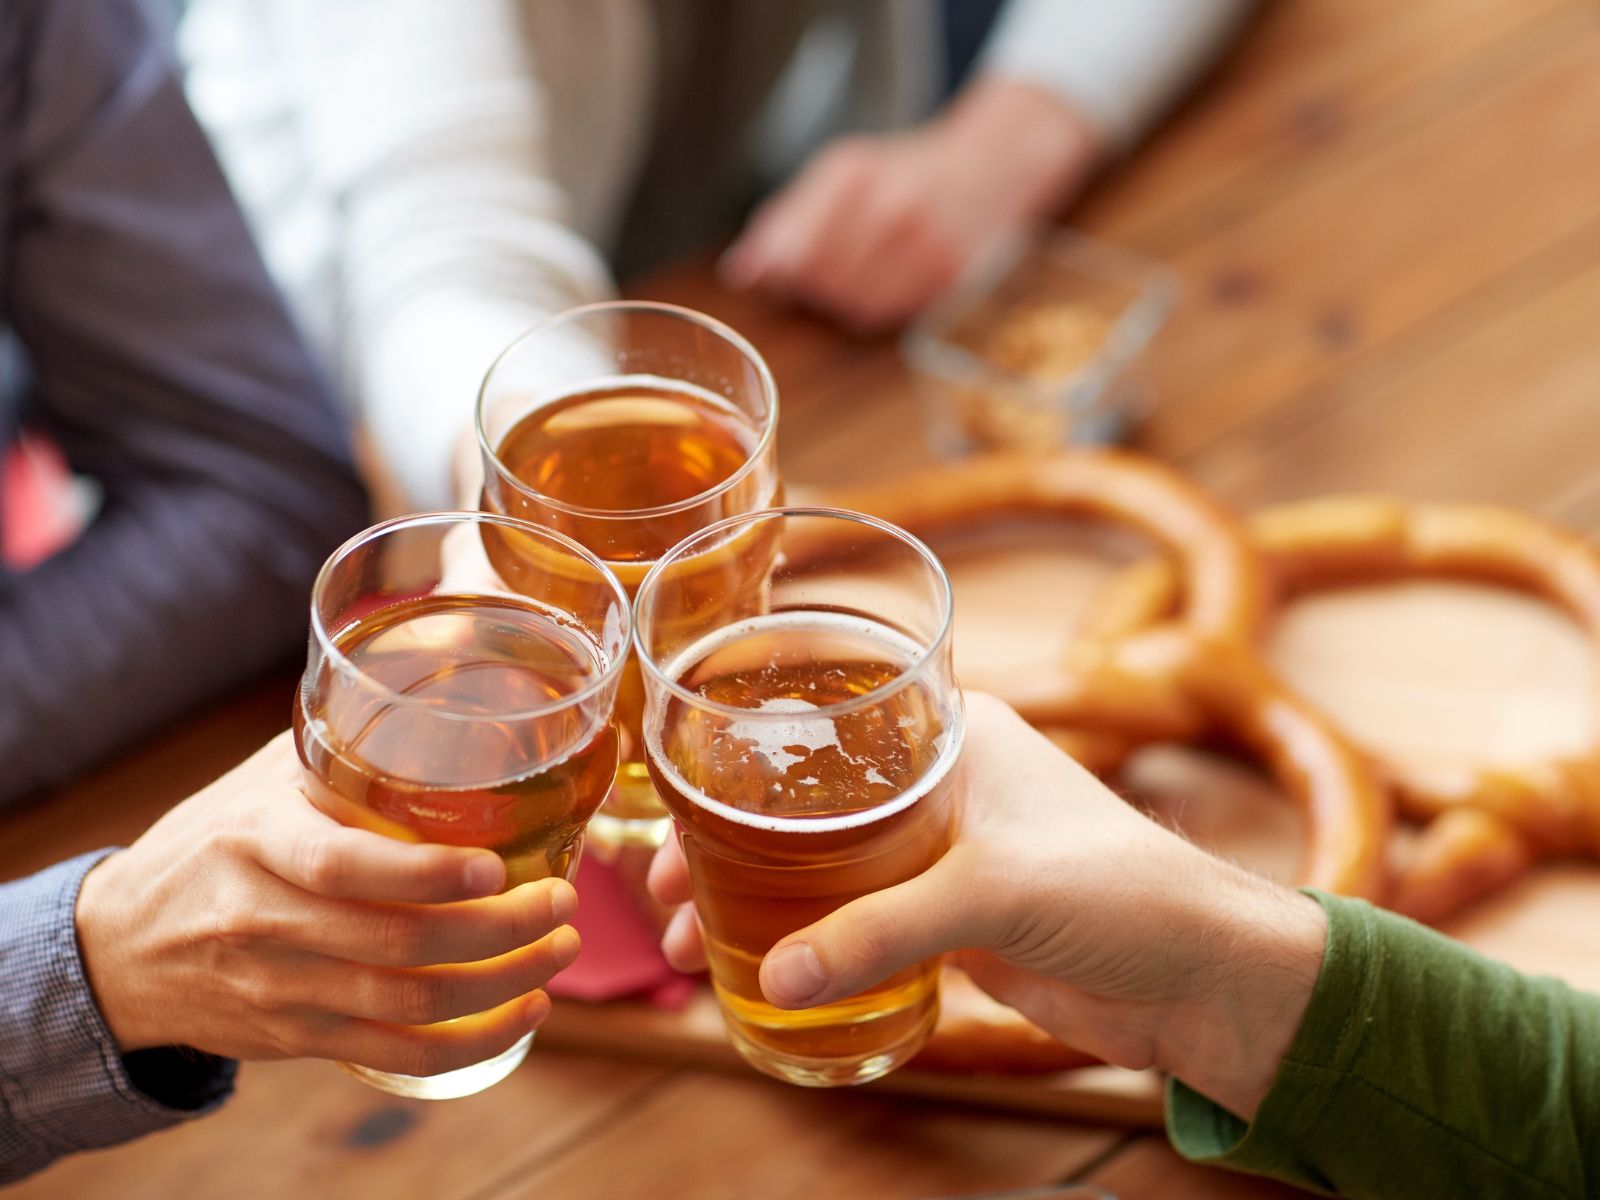 Das Bild fängt den geselligen Moment ein, in dem Freunde mit Bier auf gemeinsame Erlebnisse anstoßen.